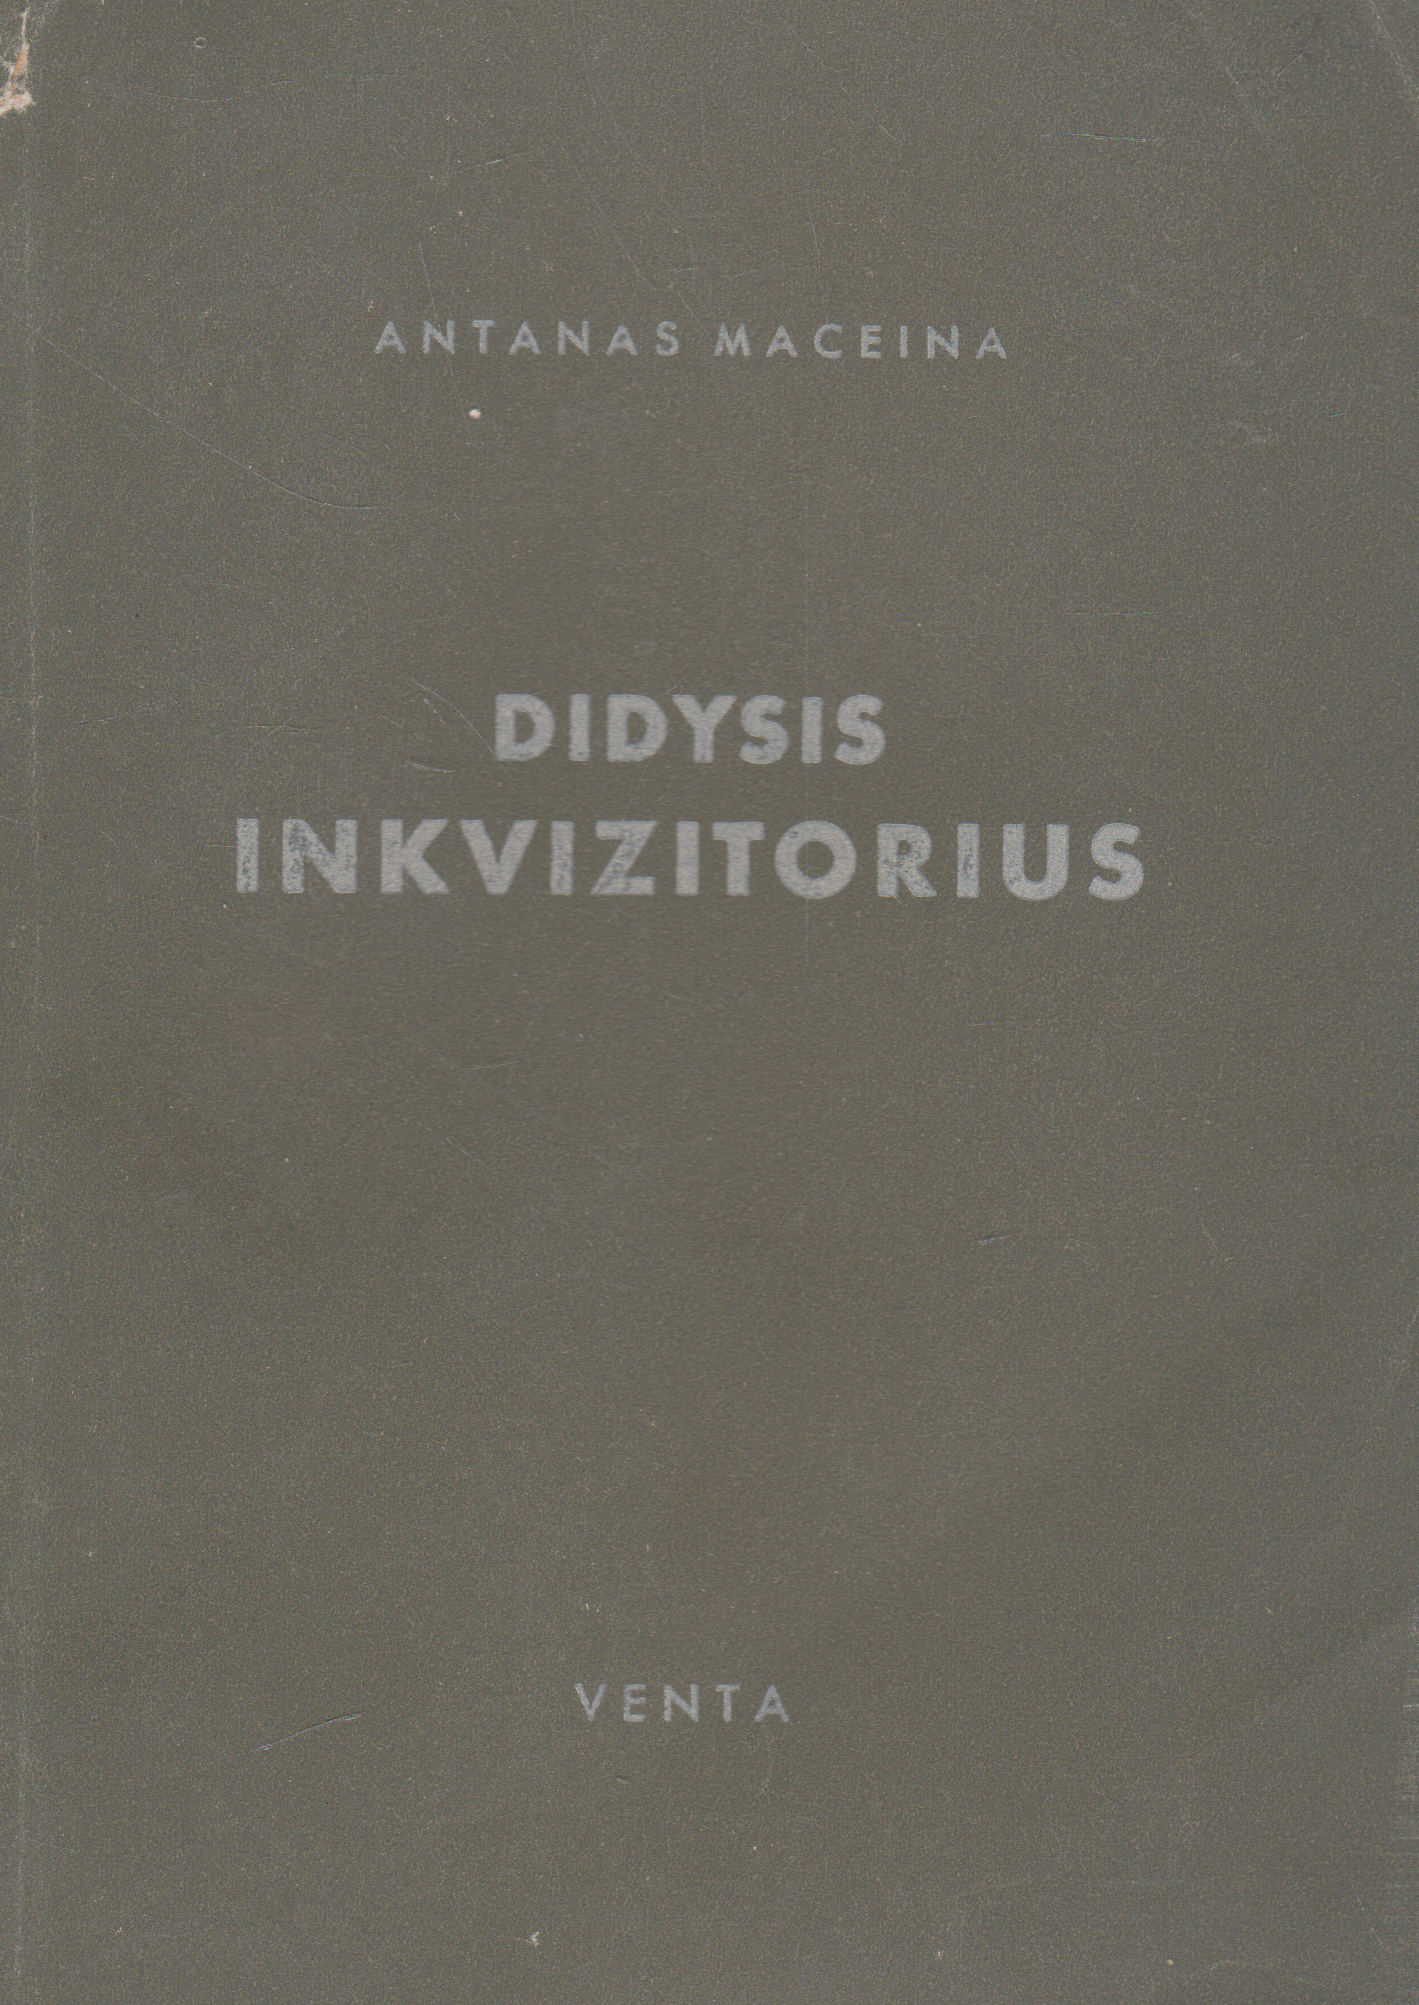 Antanas Maceina - Didysis inkvizitorius, 1950 m. Venta (su defektu)